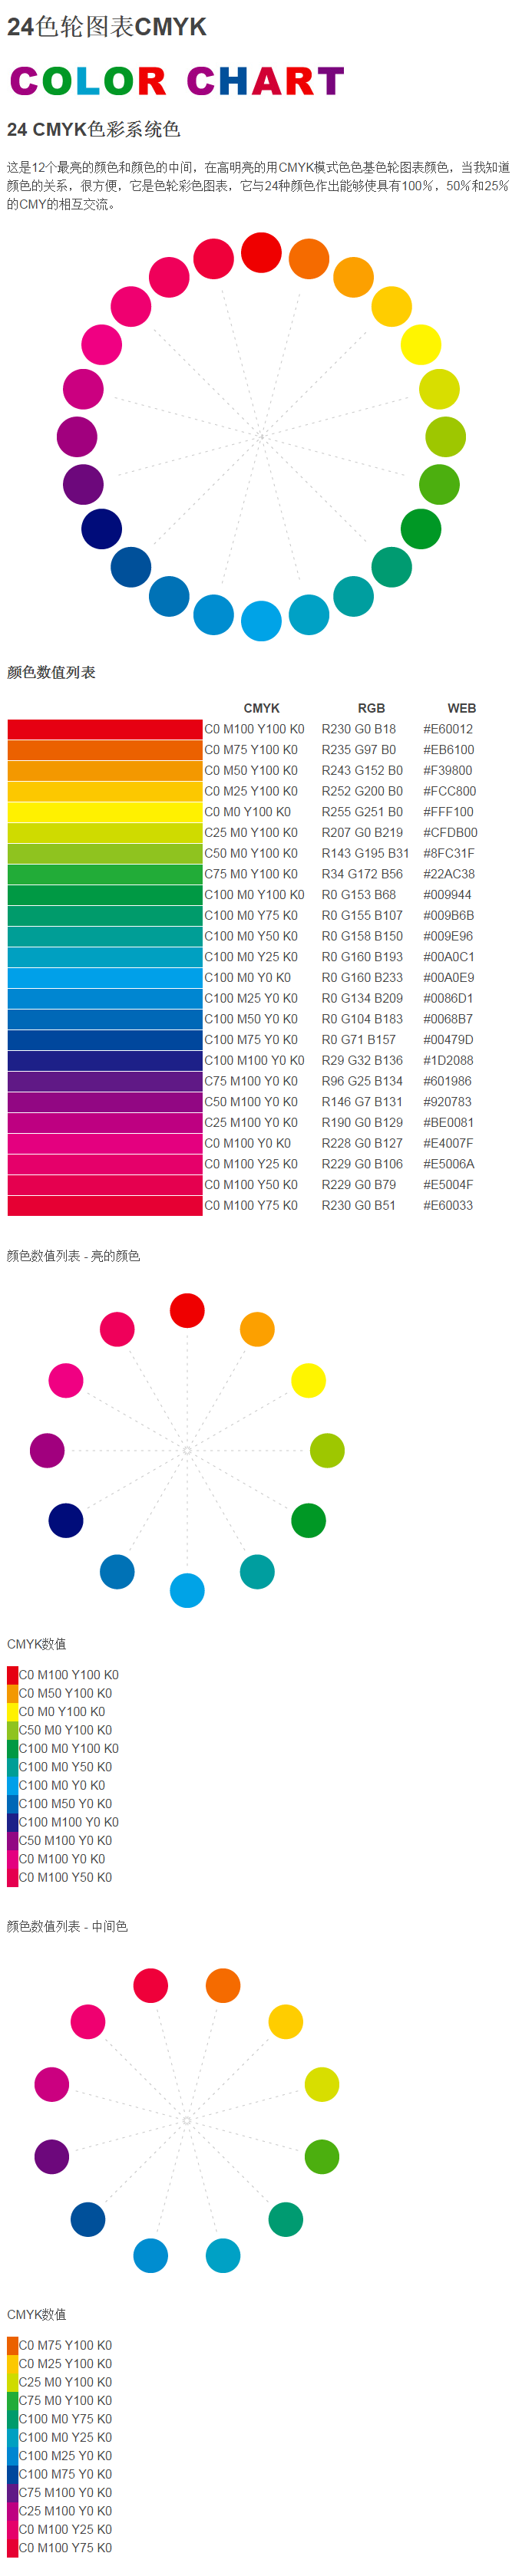 cmyk24色轮图表 cmyk色值颜色数值列表